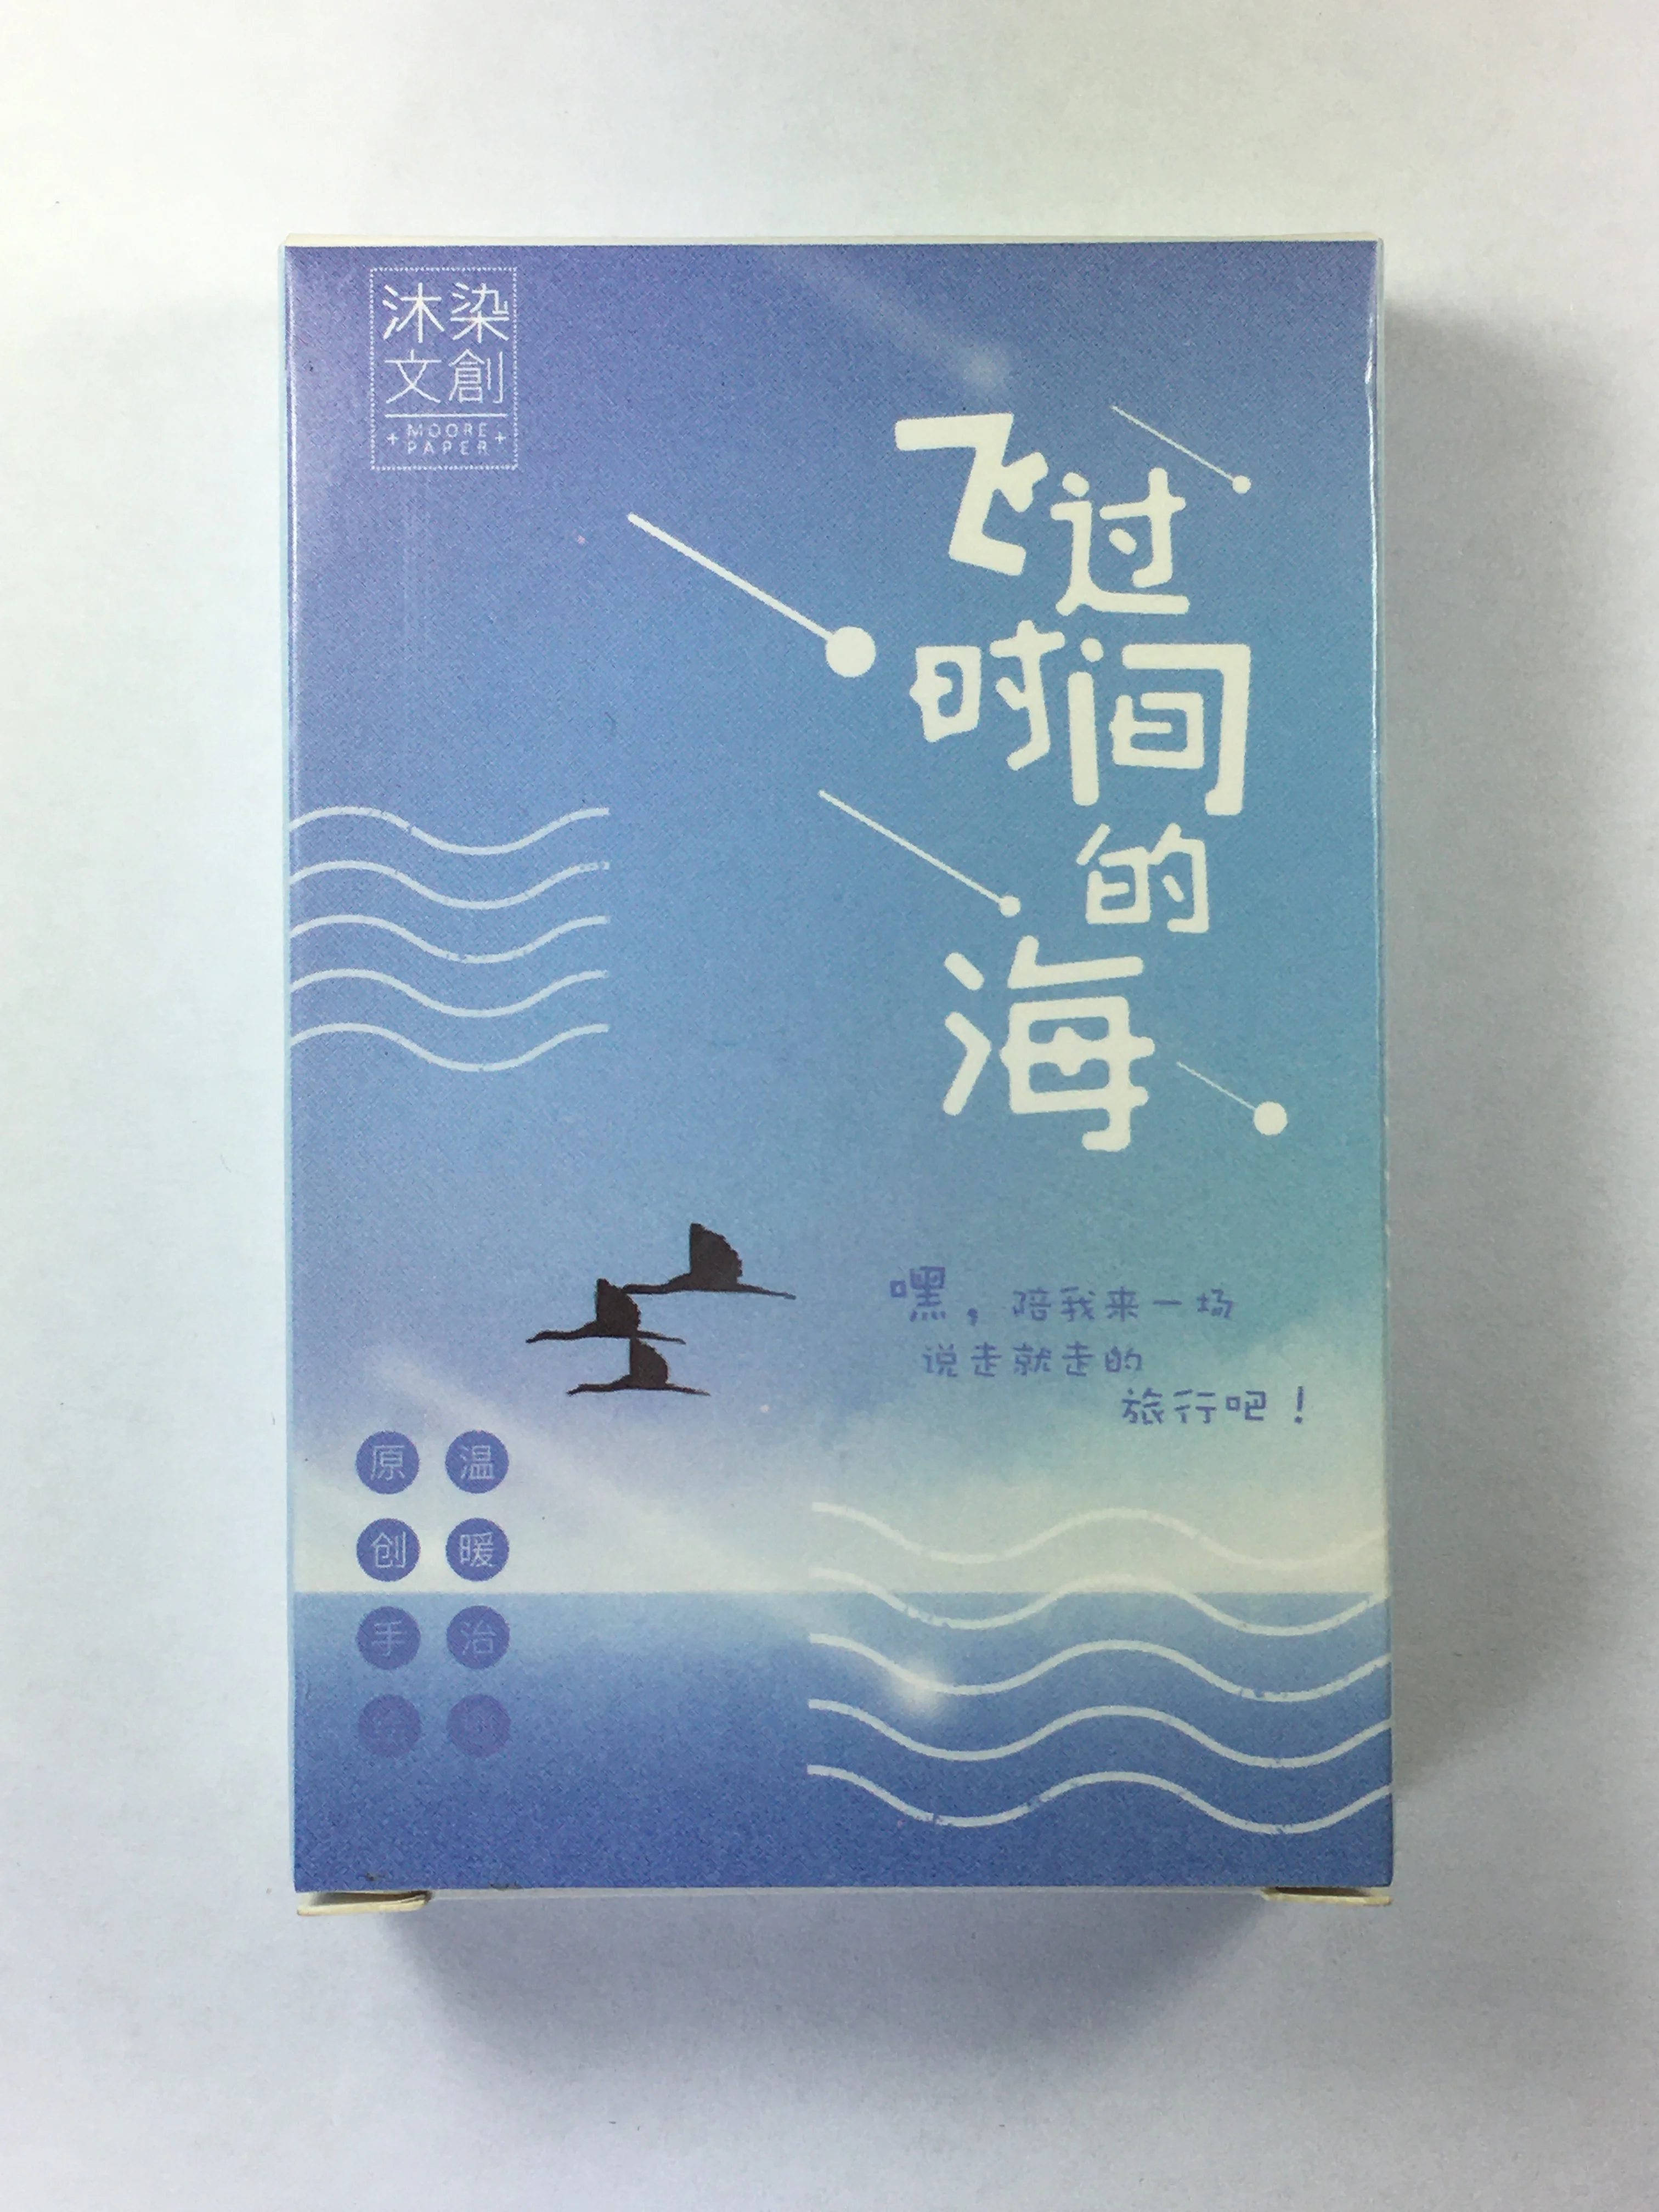 L141-Pass морская бумага поздравительная открытка ЛОМО(1 упаковка = 27 штук